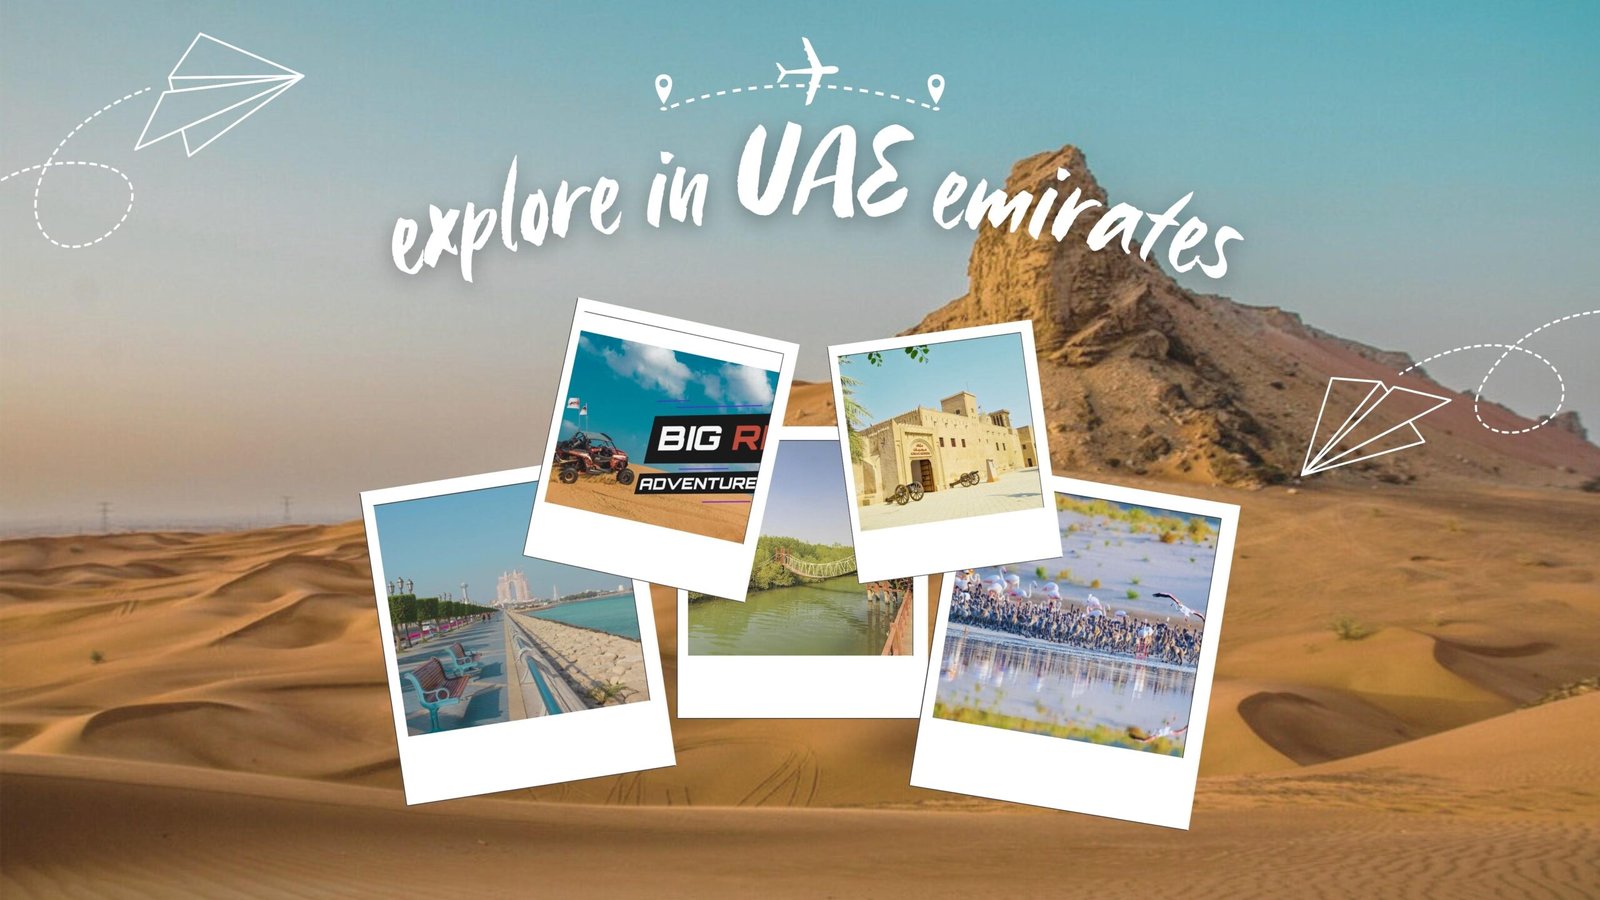 Best 7 places to explore in UAE emirates.